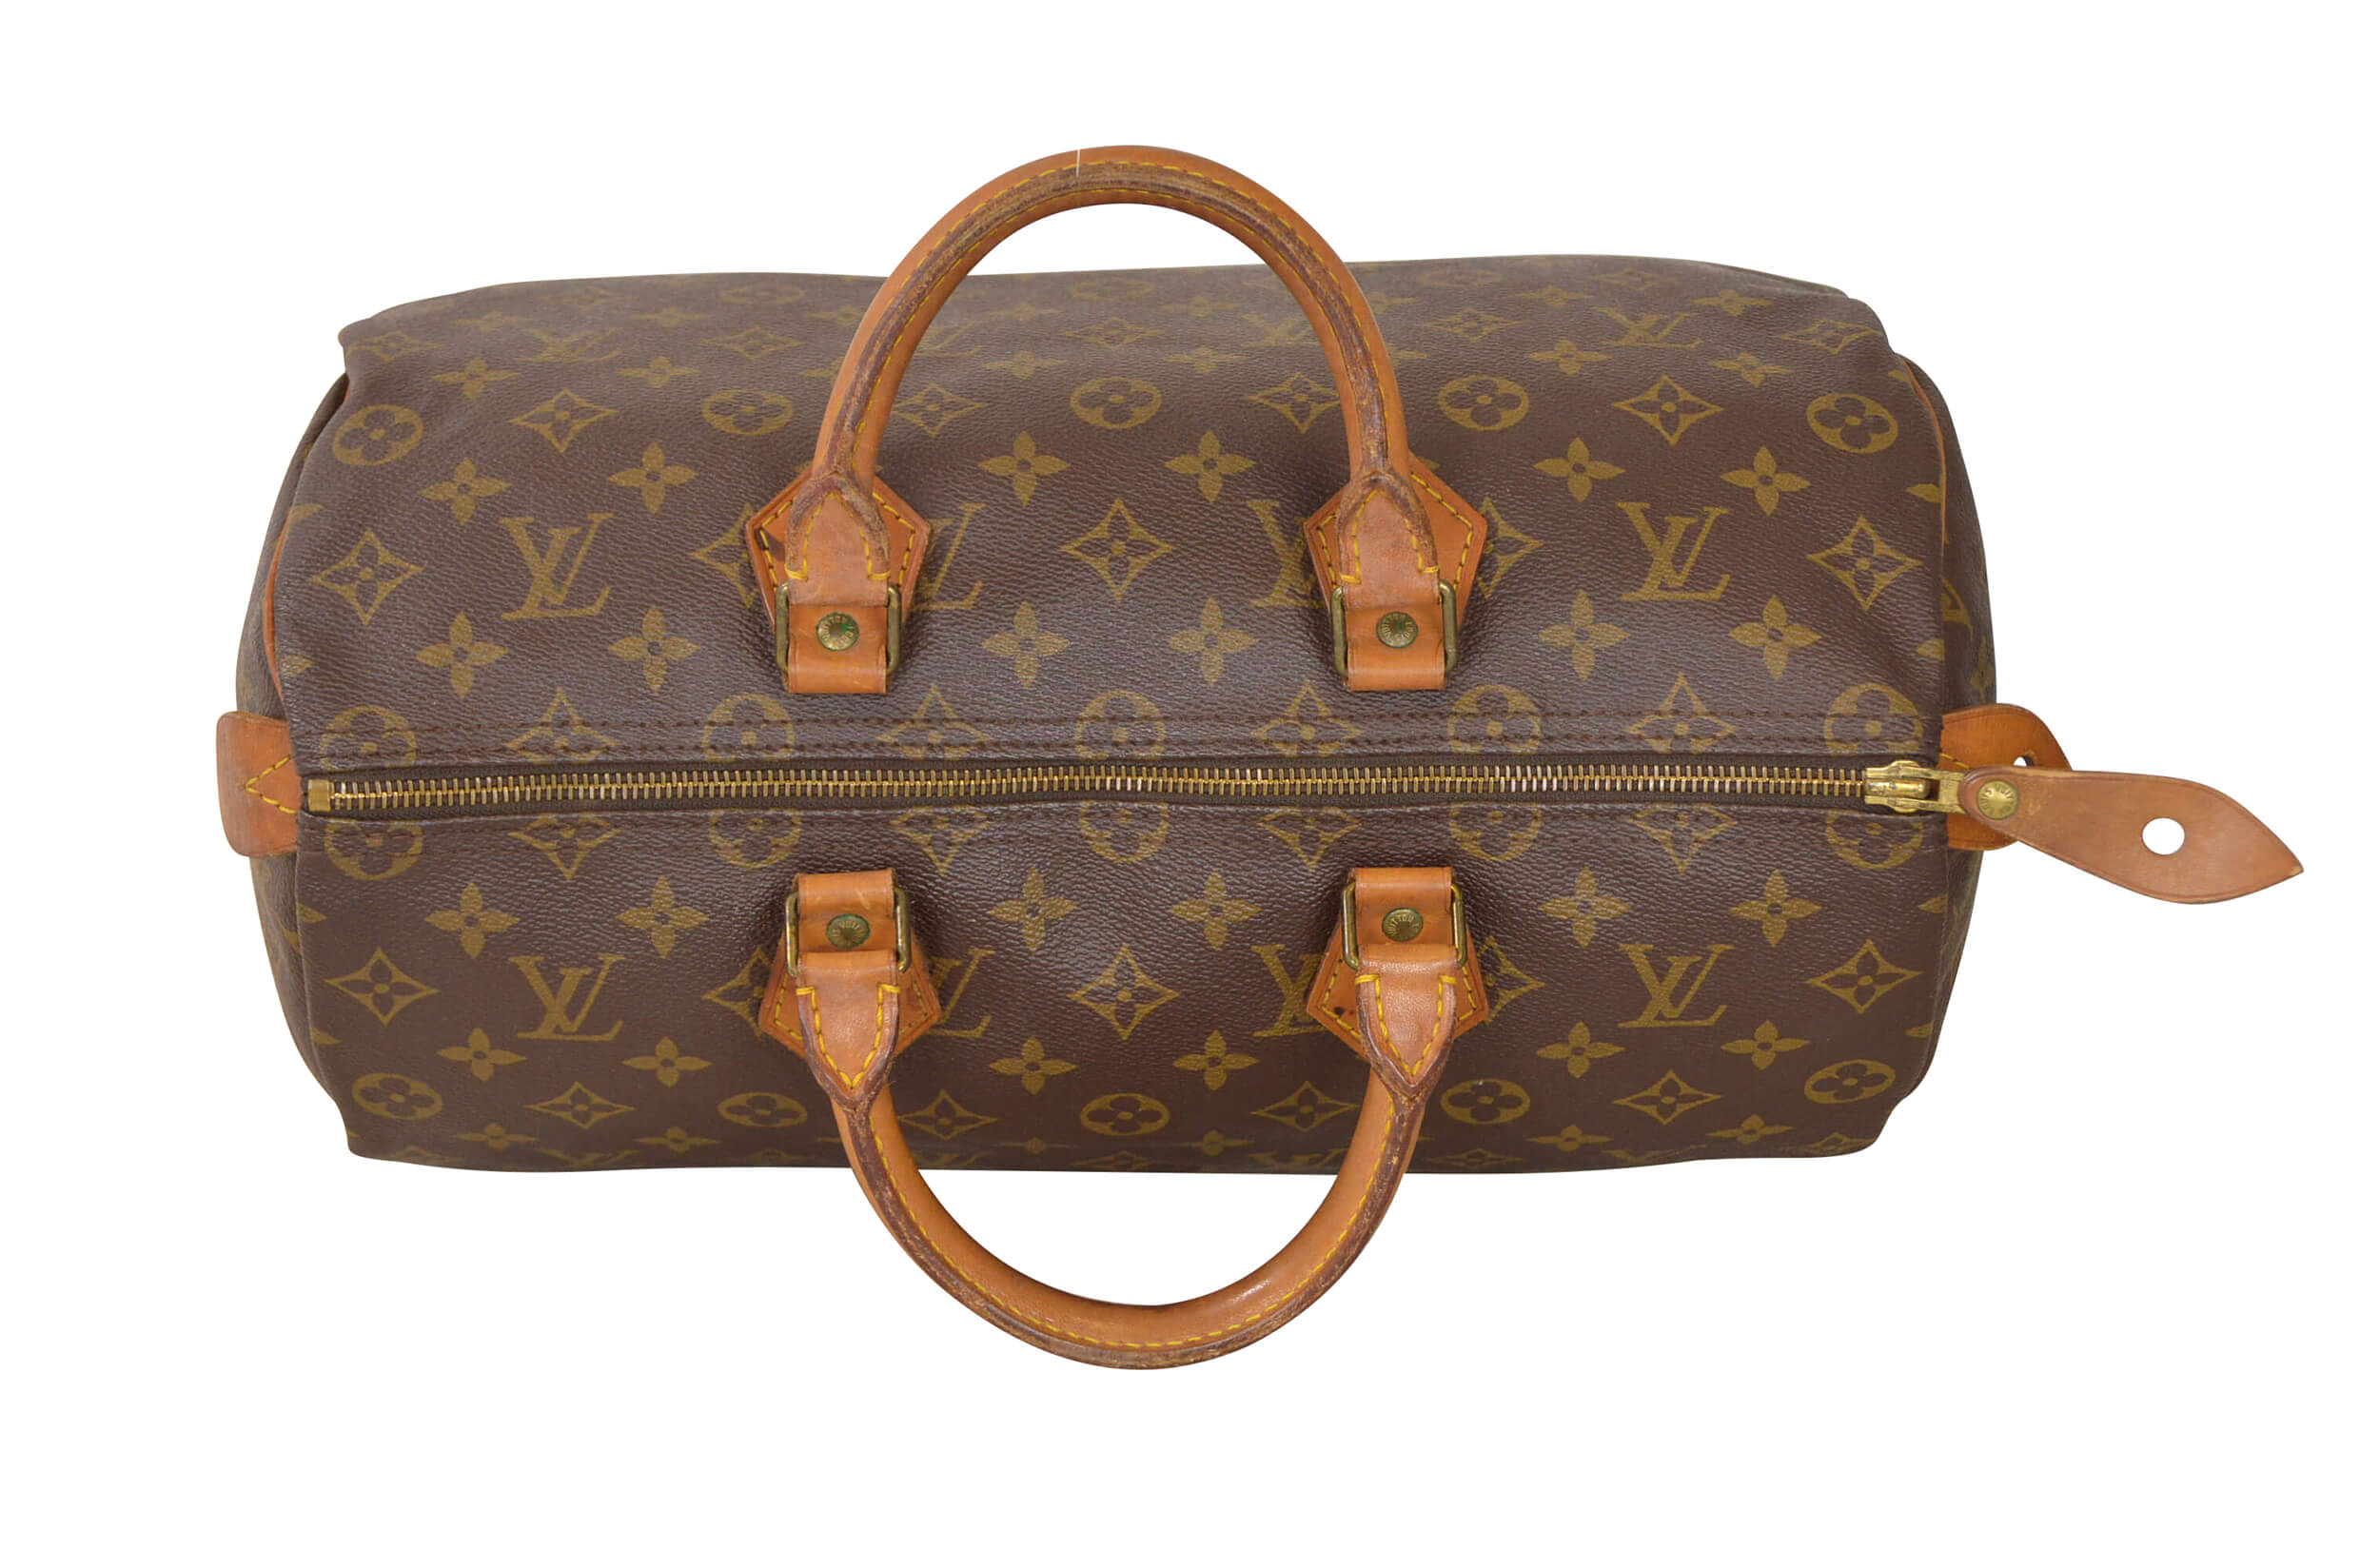  Louis  Vuitton  Monogram Speedy 35 Malletier  Hand Bag M41524 